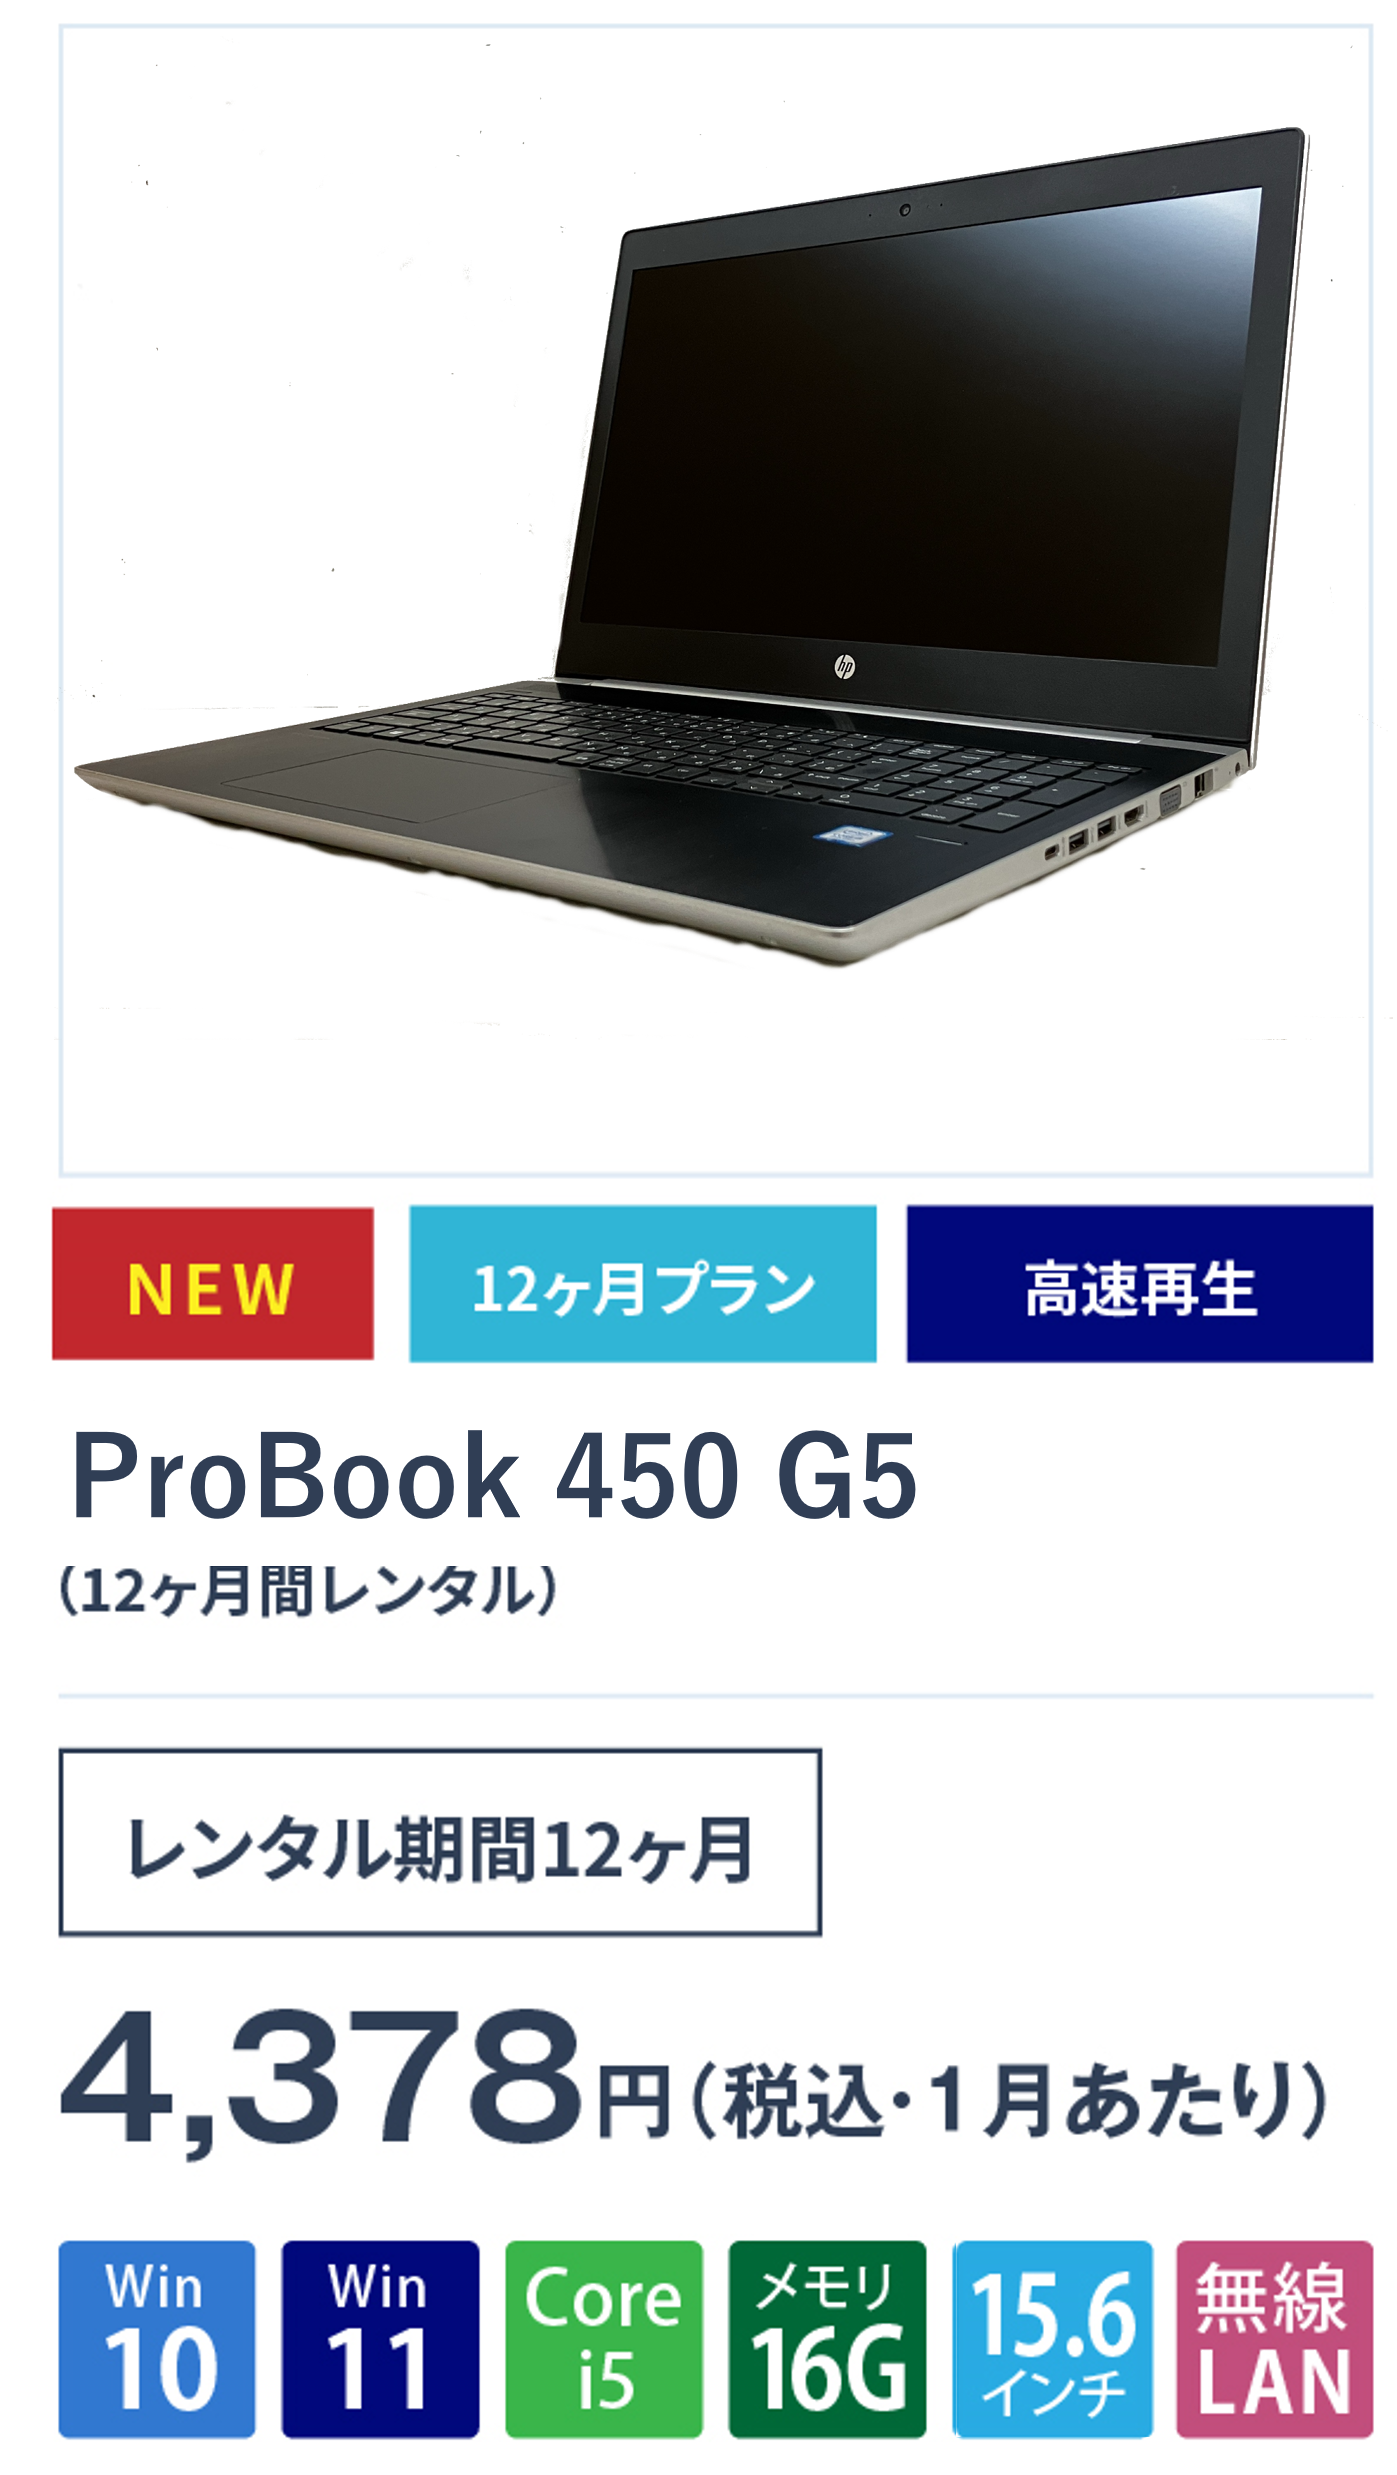 ProBook 450 G5(12ヵ月間レンタル)